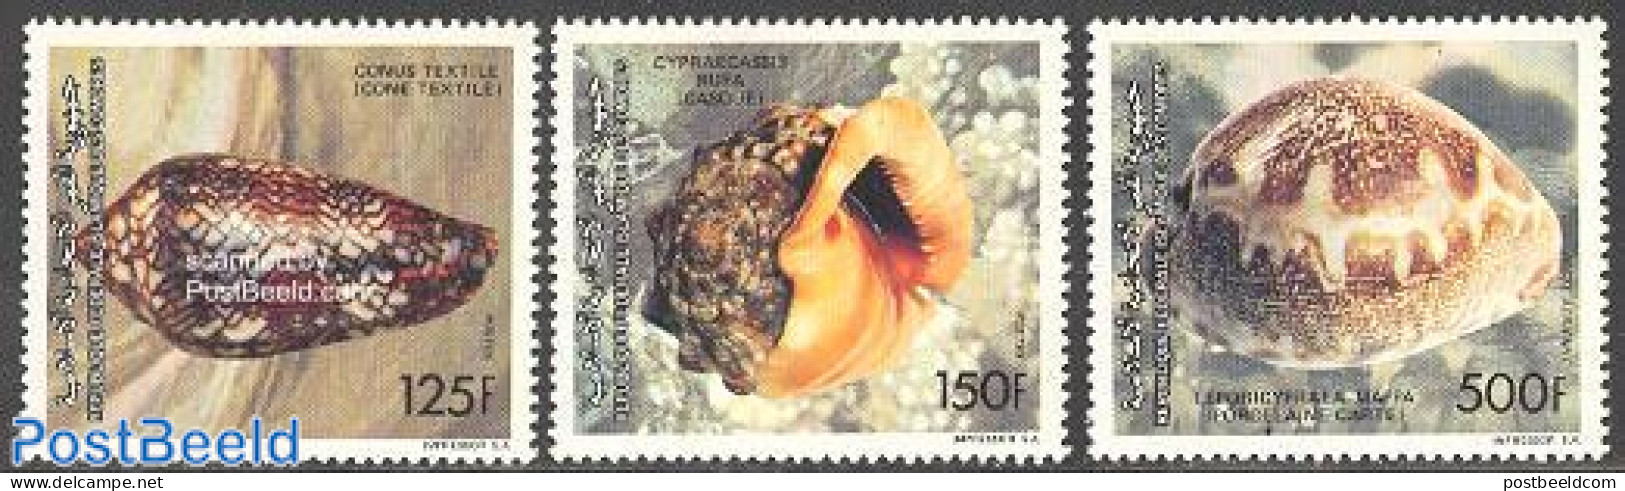 Comoros 1992 Shells 3v, Mint NH, Nature - Shells & Crustaceans - Marine Life